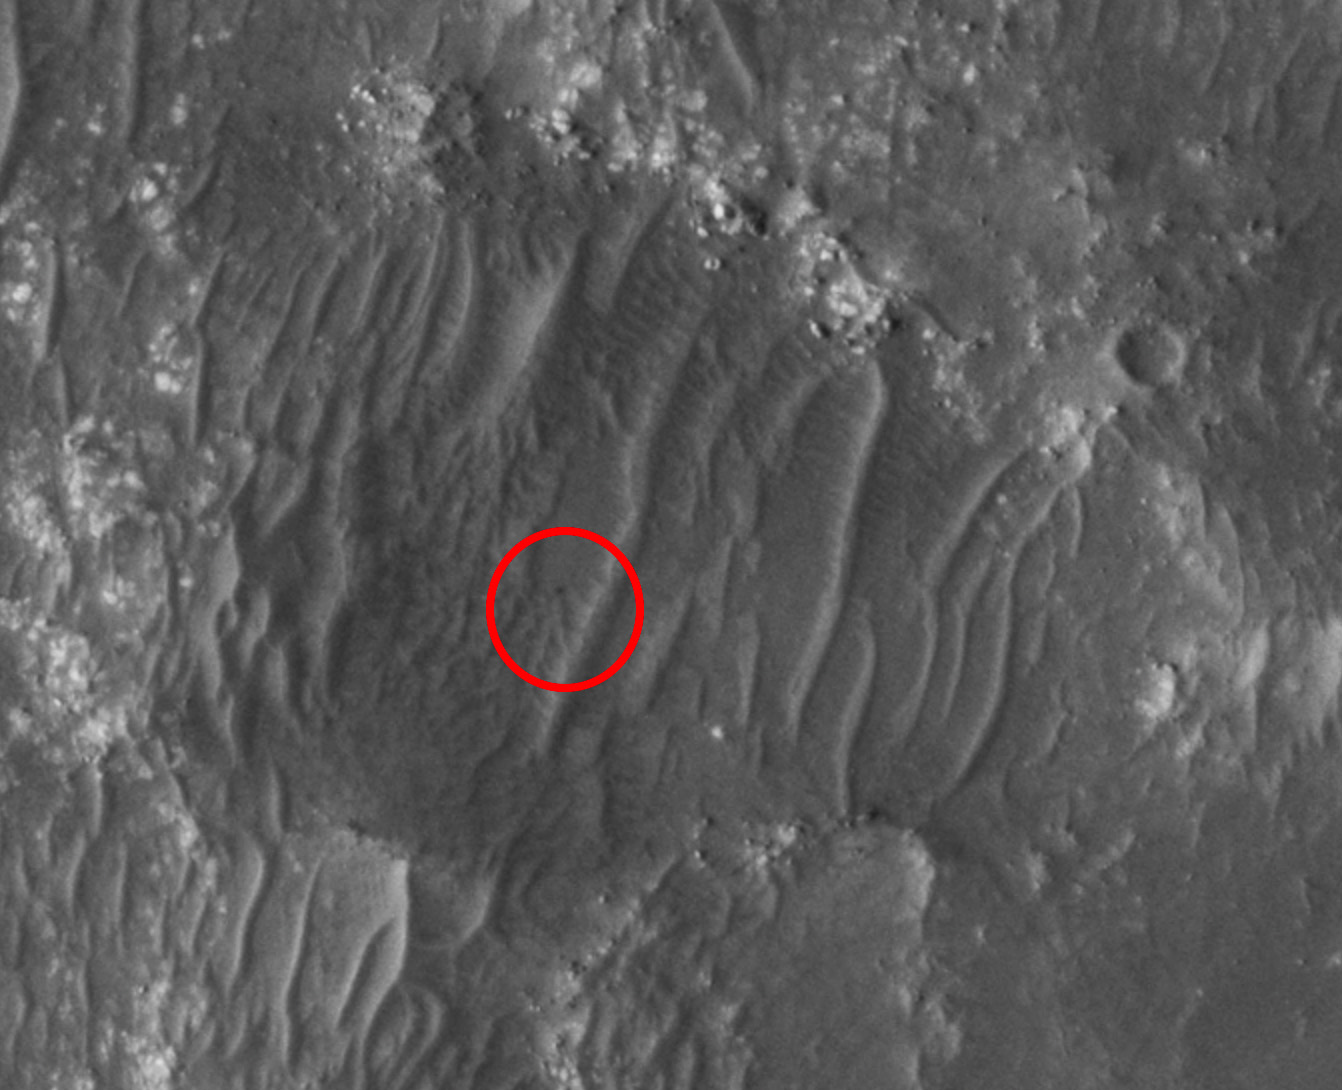 Mars Orbiter de la NASA detecta un rover desde el espacio – Ver imágenes